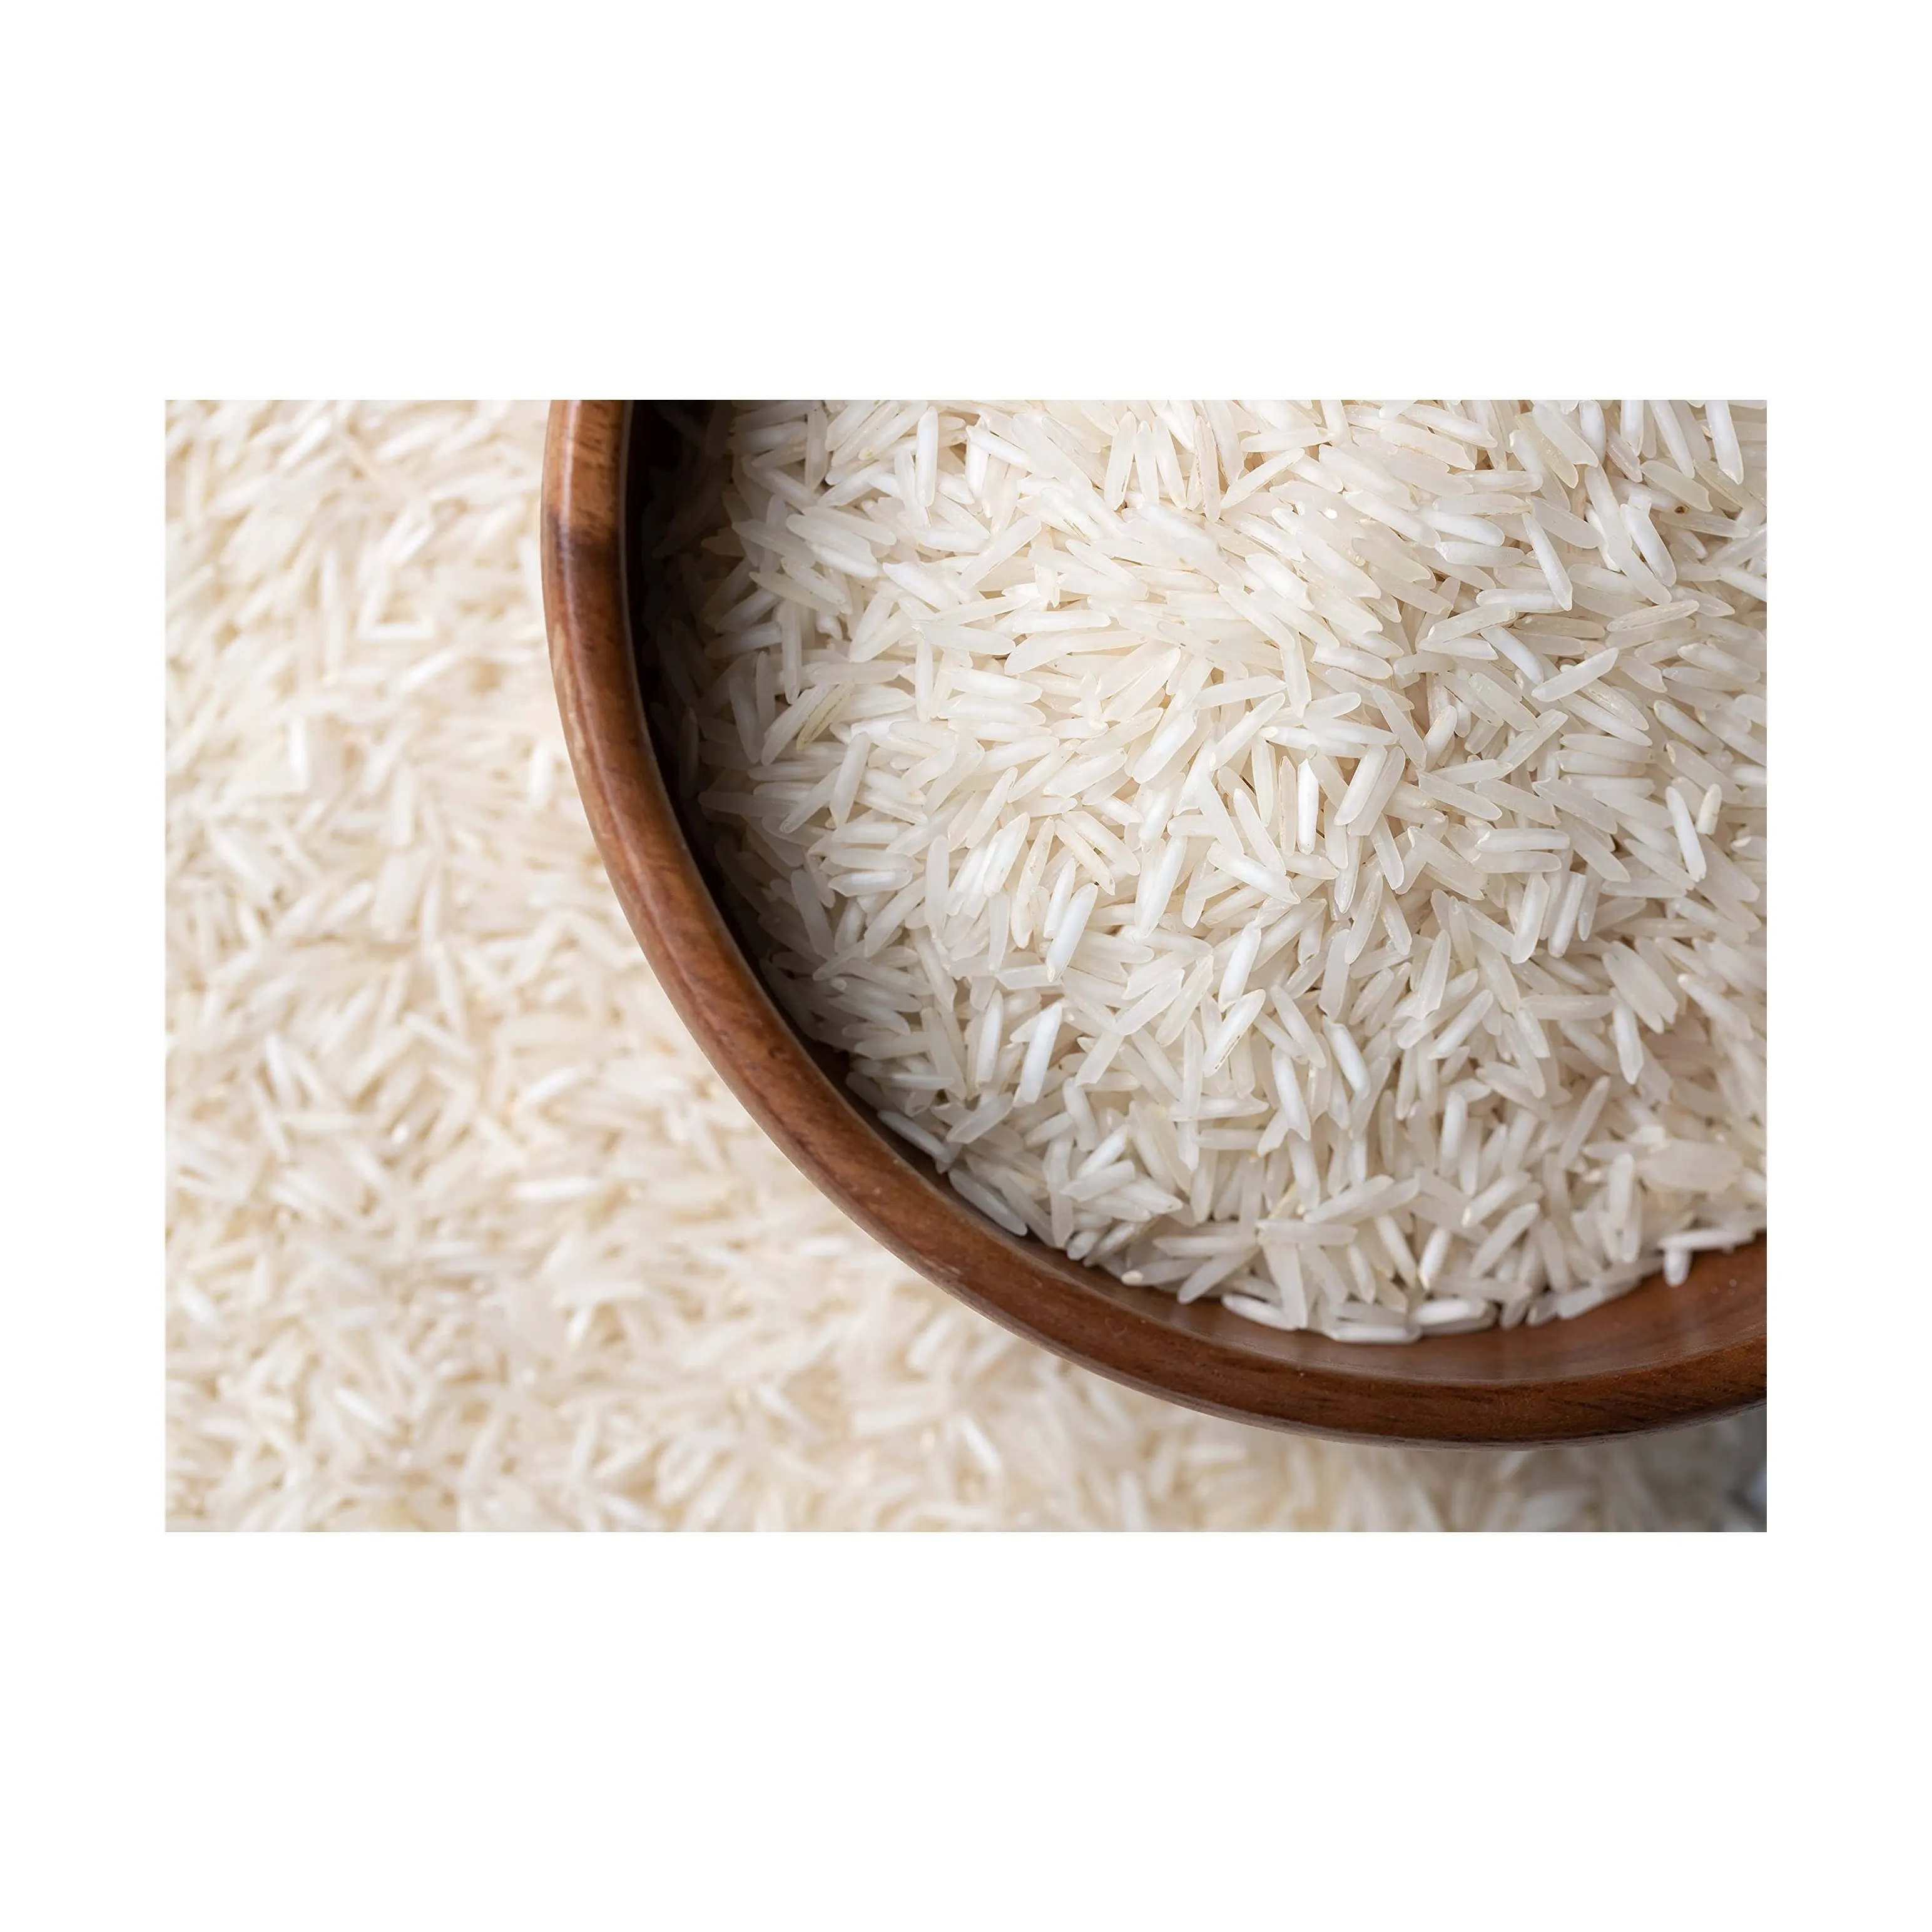 Длиннозерный рис тайский, цена, жасминовый рис/длиннозерный ароматный рис/белый рис, длиннозерный белый